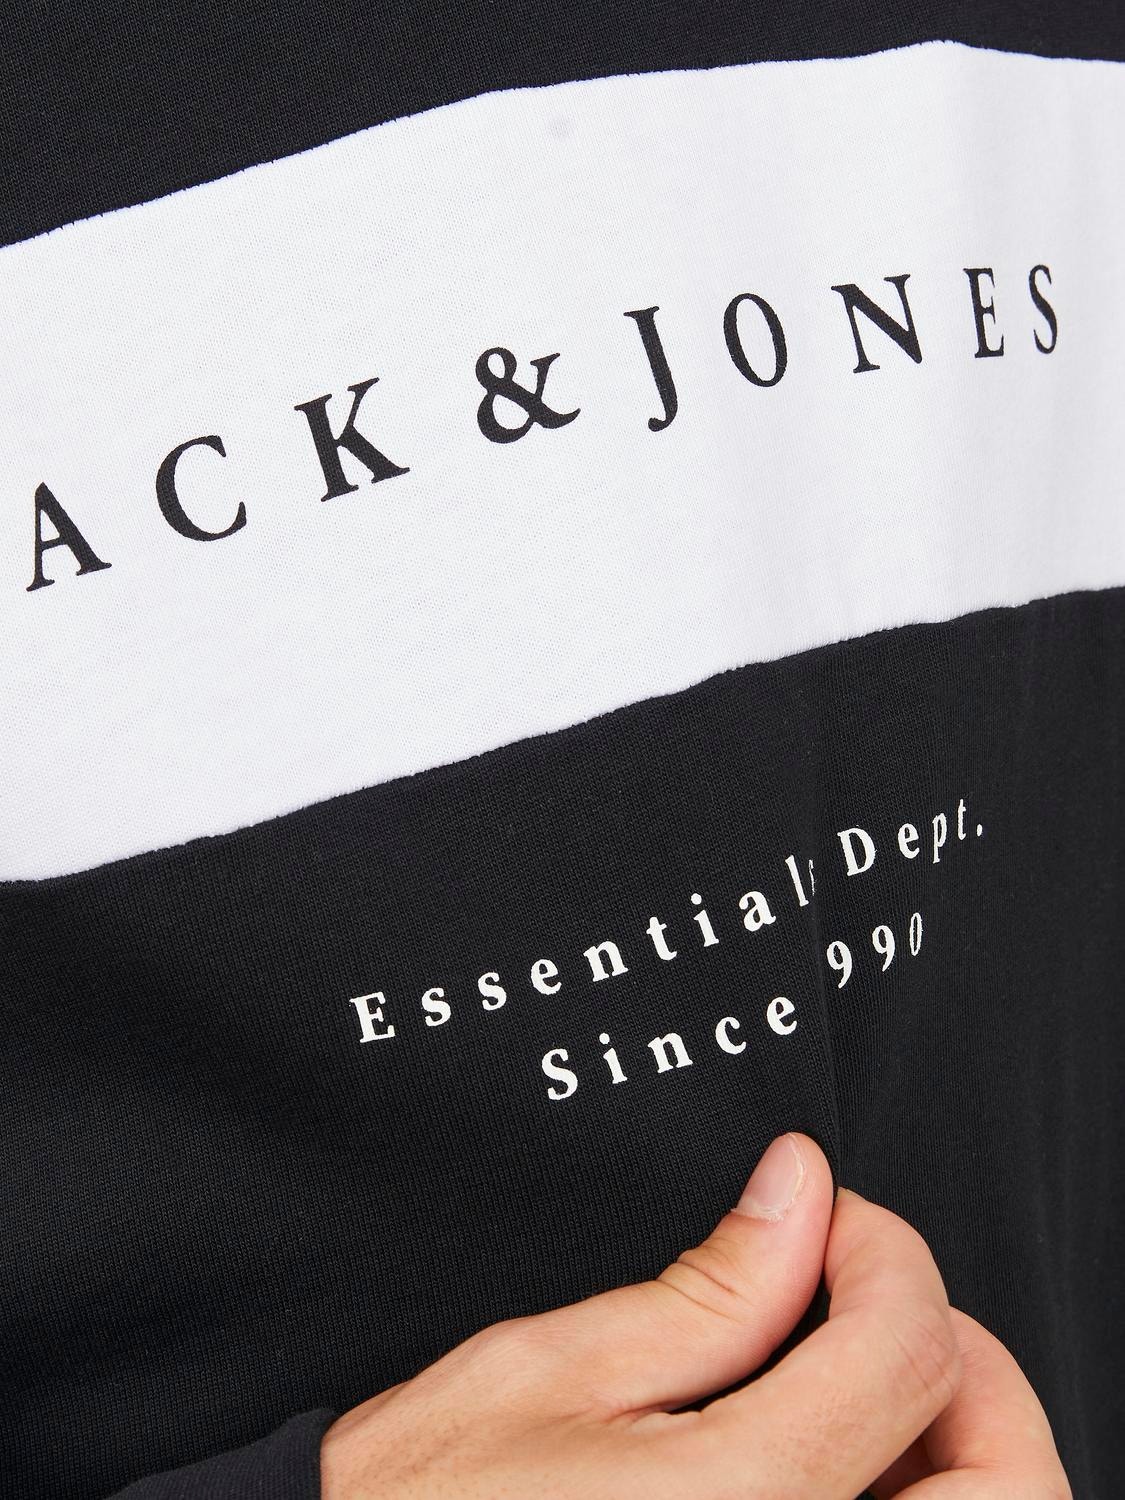 Jack & Jones Felpa Girocollo Con logo -Black - 12249979